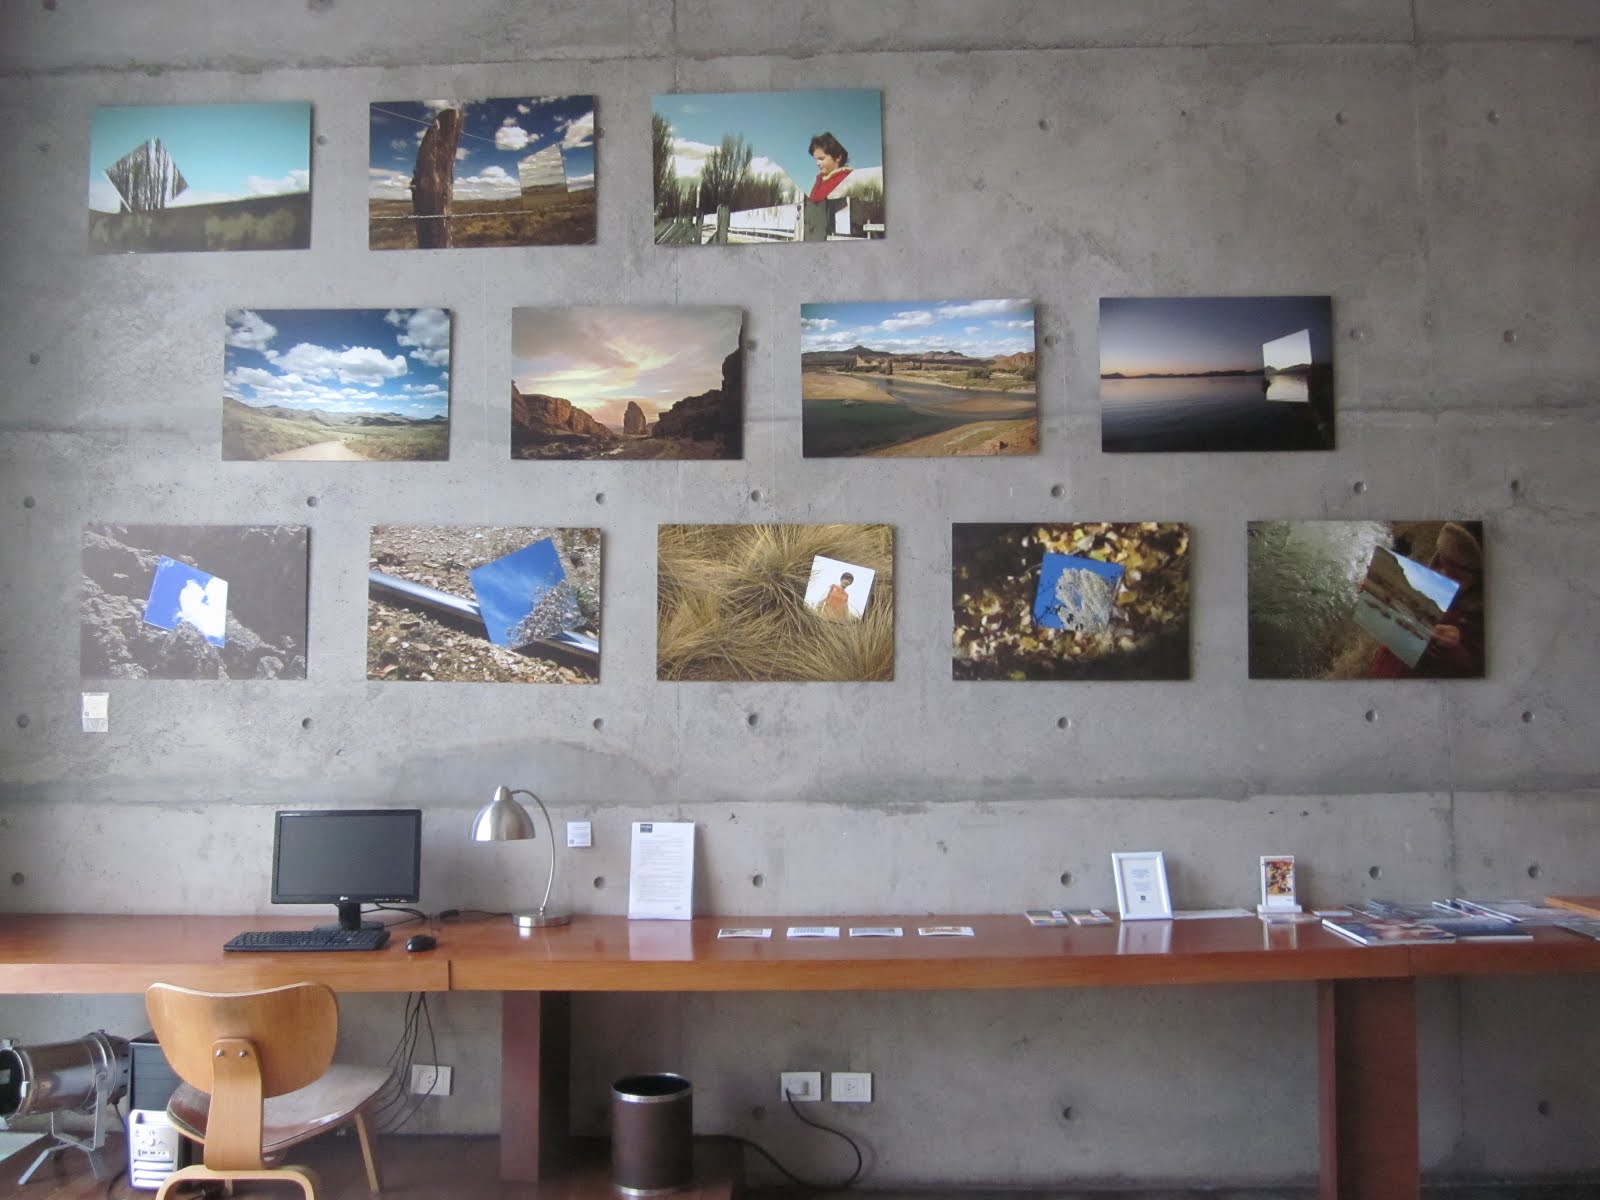 Fotos serie "Estepismos" de Marcos Radicella de Bariloche